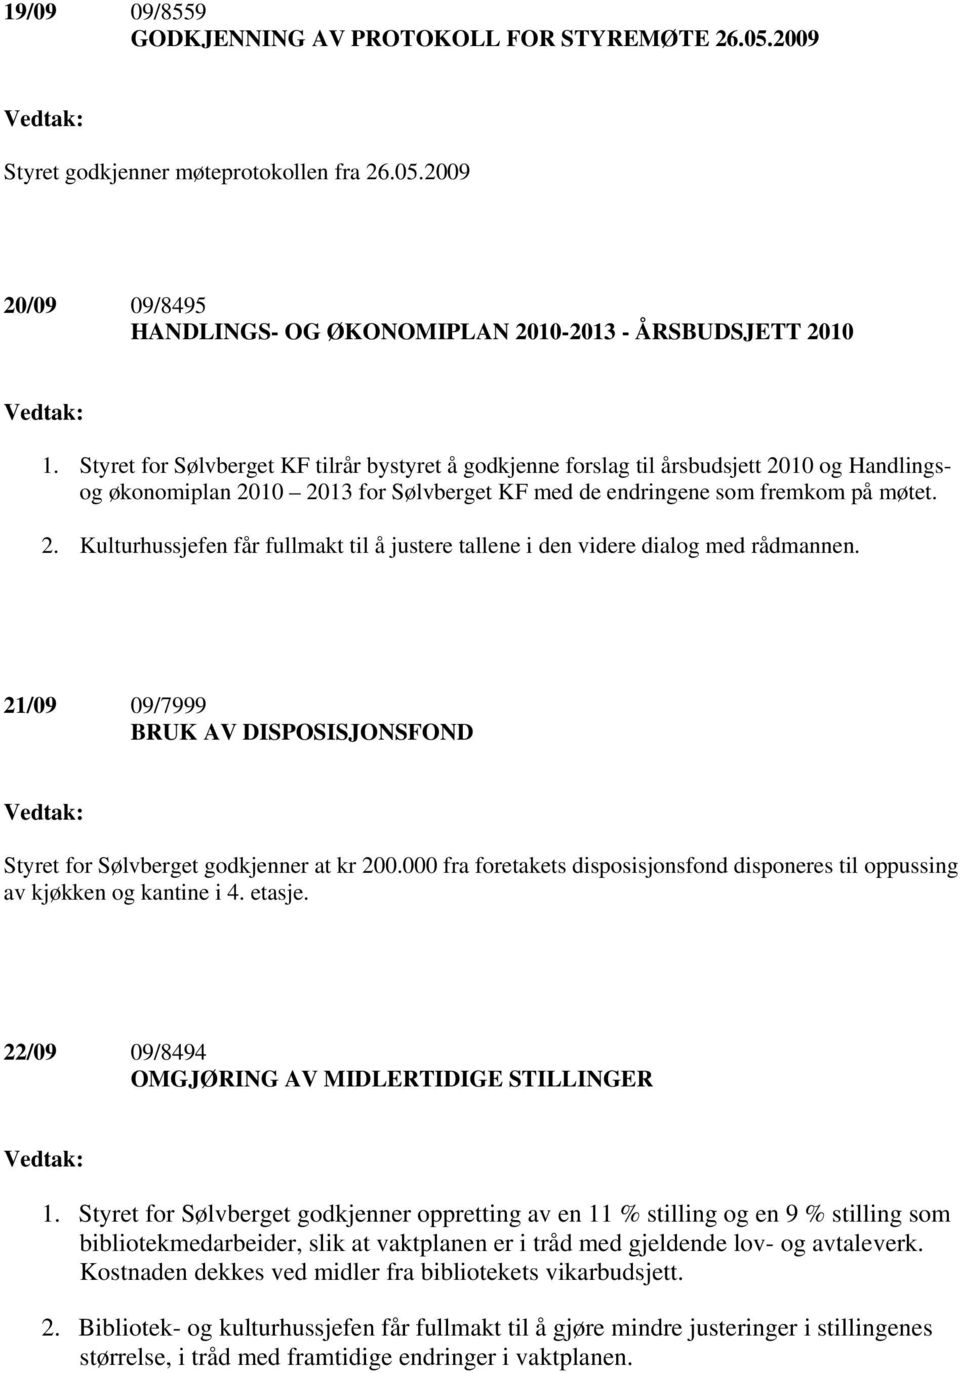 21/09 09/7999 BRUK AV DISPOSISJONSFOND Styret for Sølvberget godkjenner at kr 200.000 fra foretakets disposisjonsfond disponeres til oppussing av kjøkken og kantine i 4. etasje.